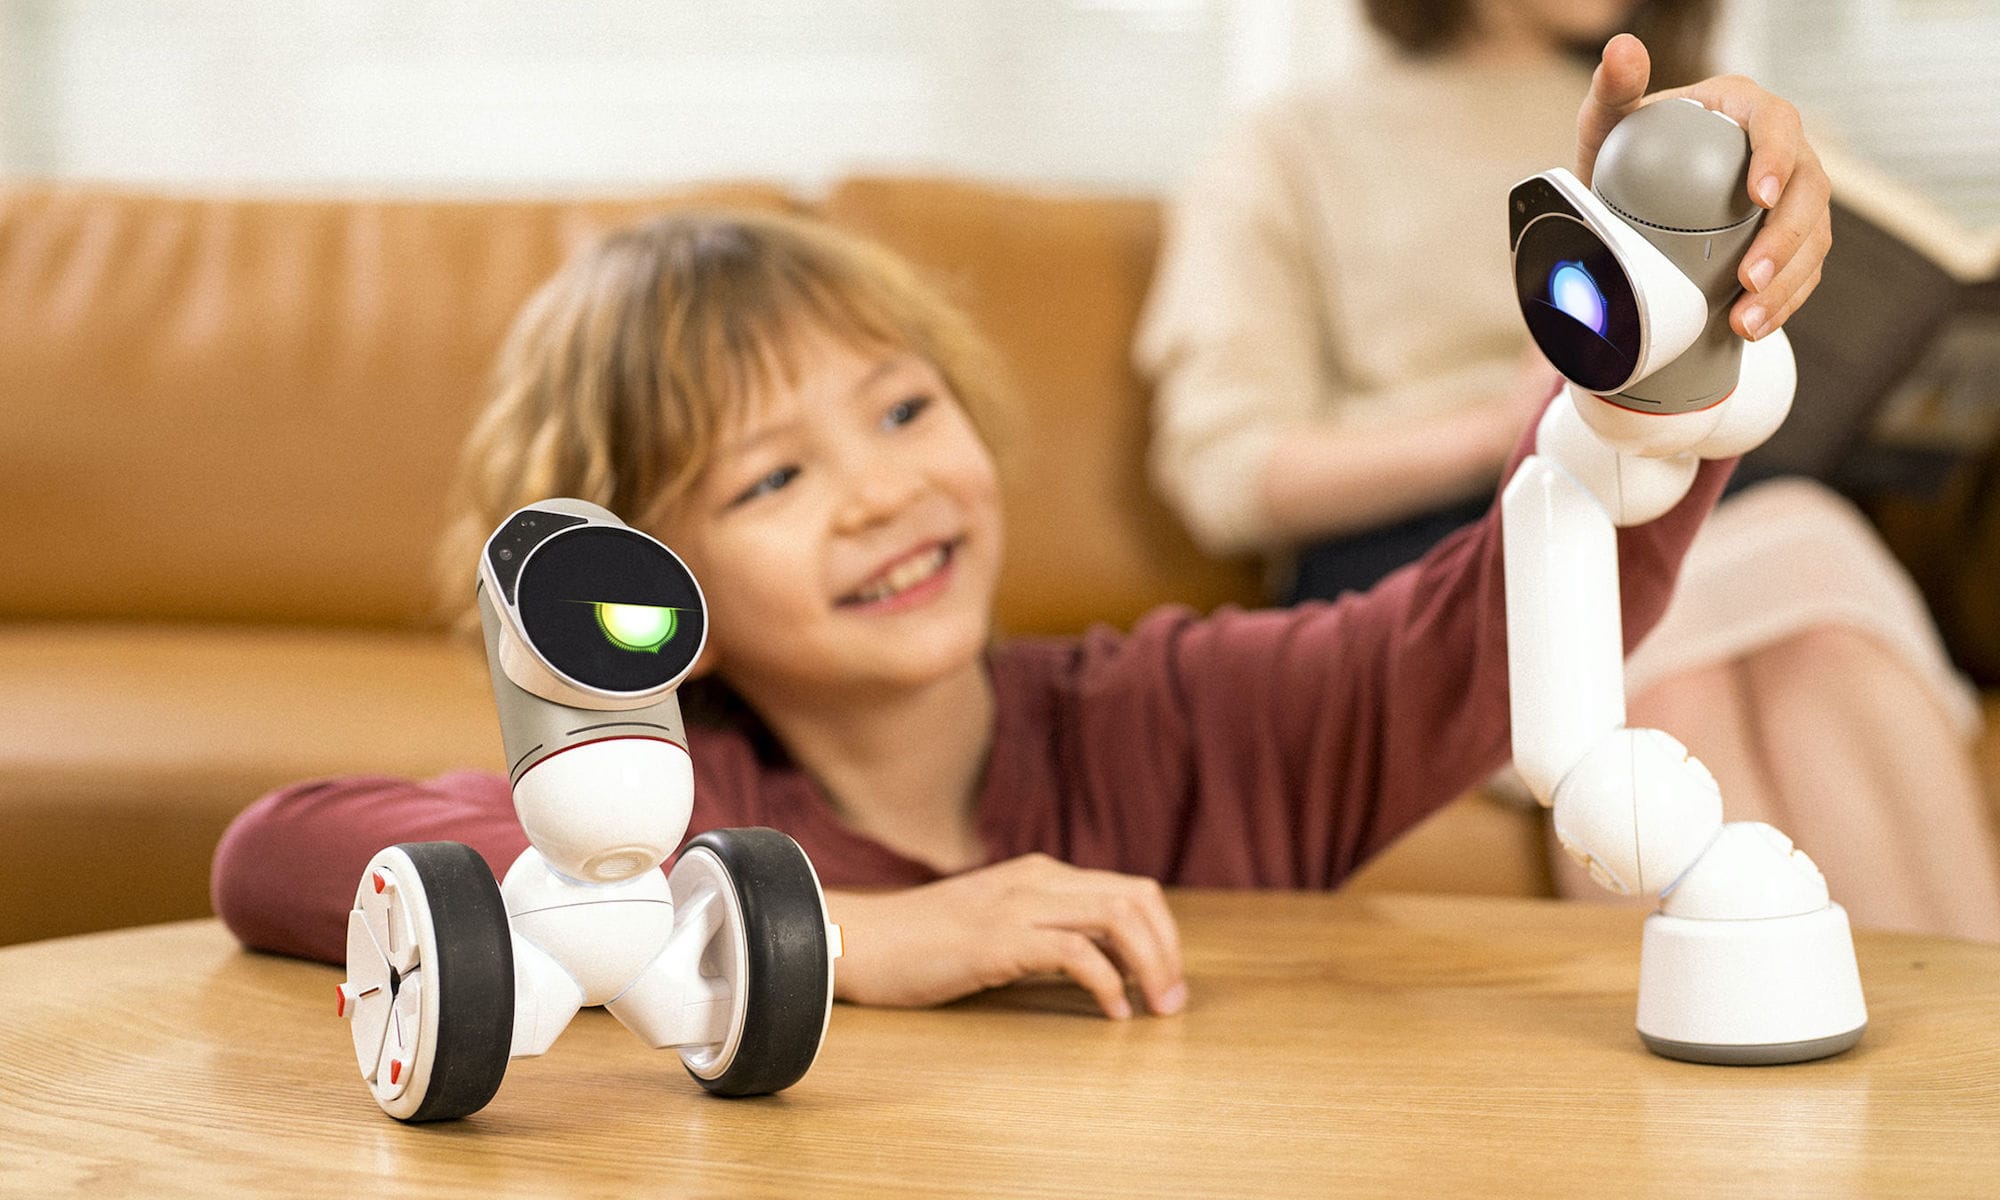 これらの未来的なロボットは、あなたの生活を本当に楽にしてくれます